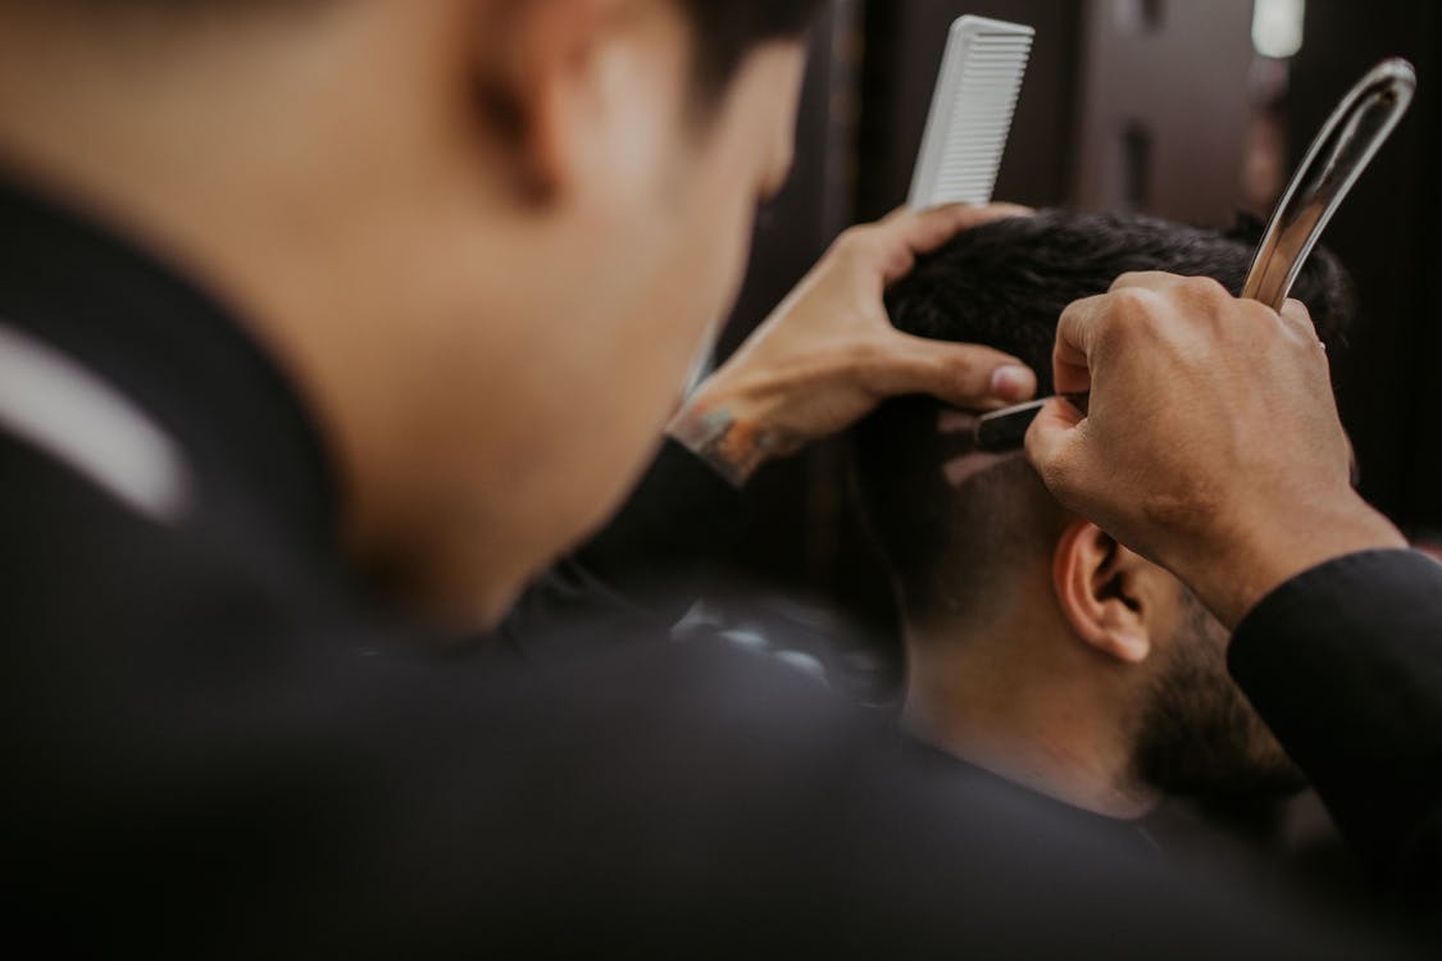 Meeste juukselõikus maksab mõnes kohas viis eurot, samas kui teises kohas küsitakse töö eest mitukümend eurot.